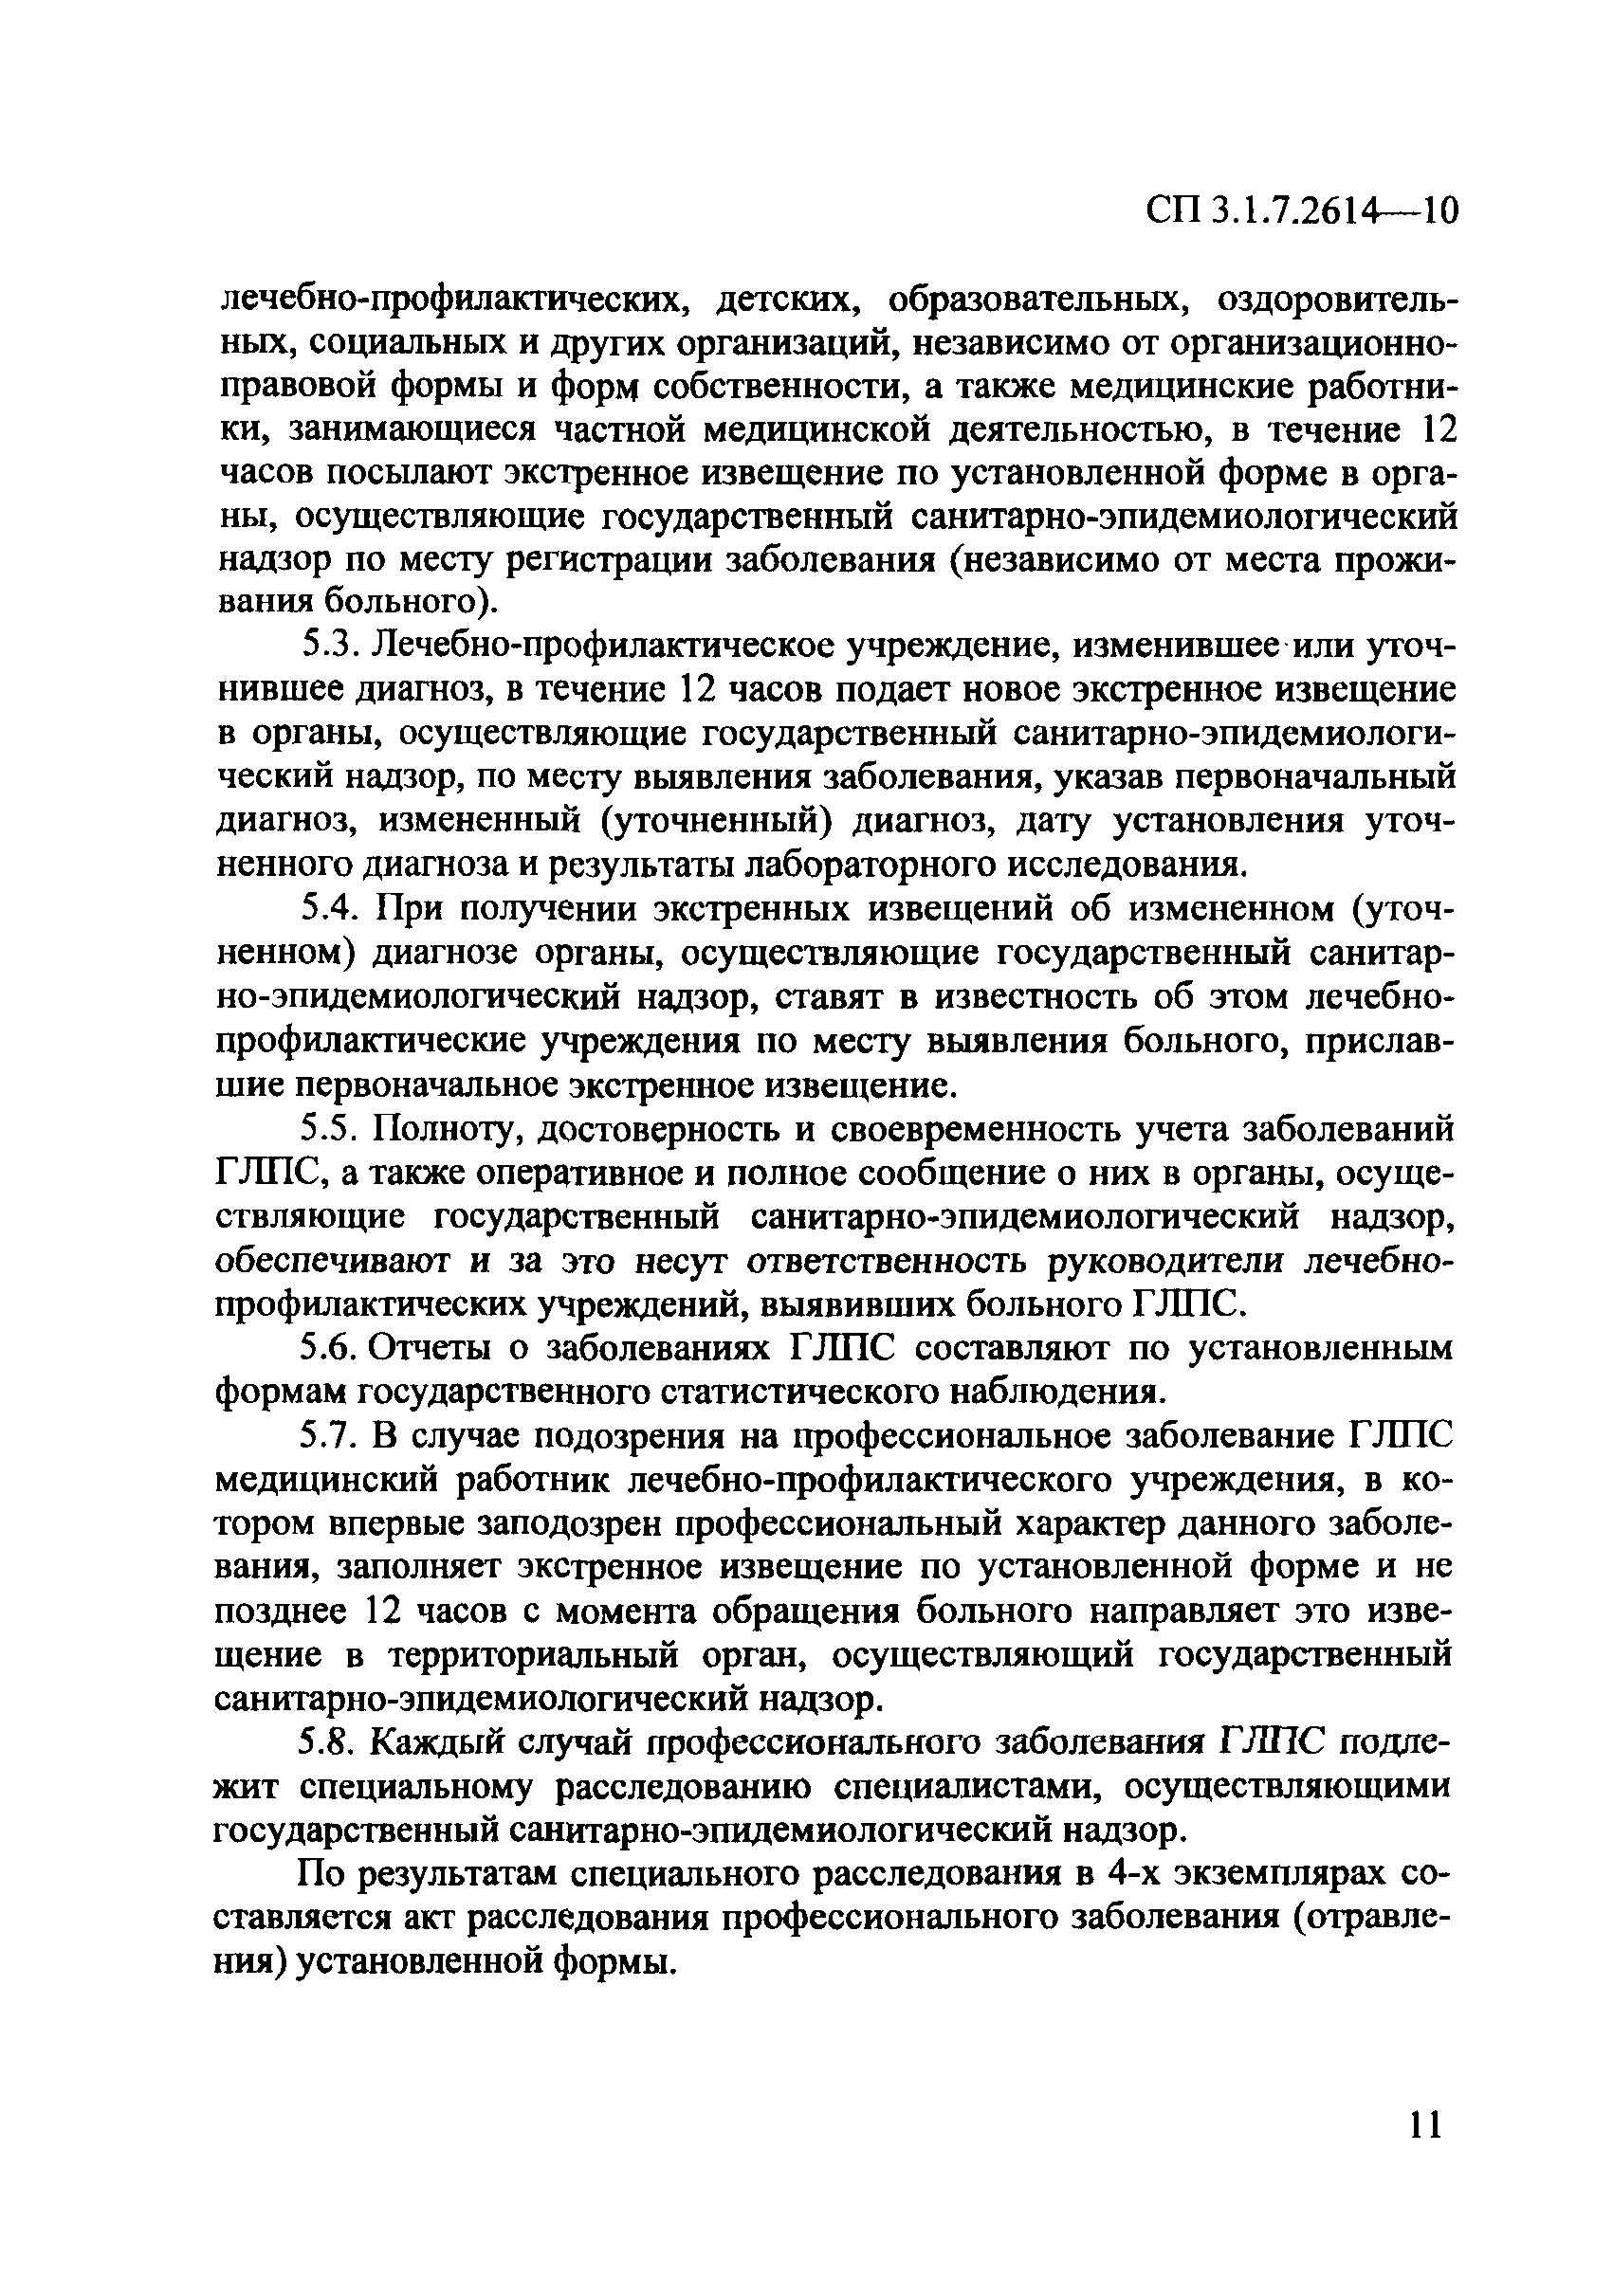 СП 3.1.7.2614-10